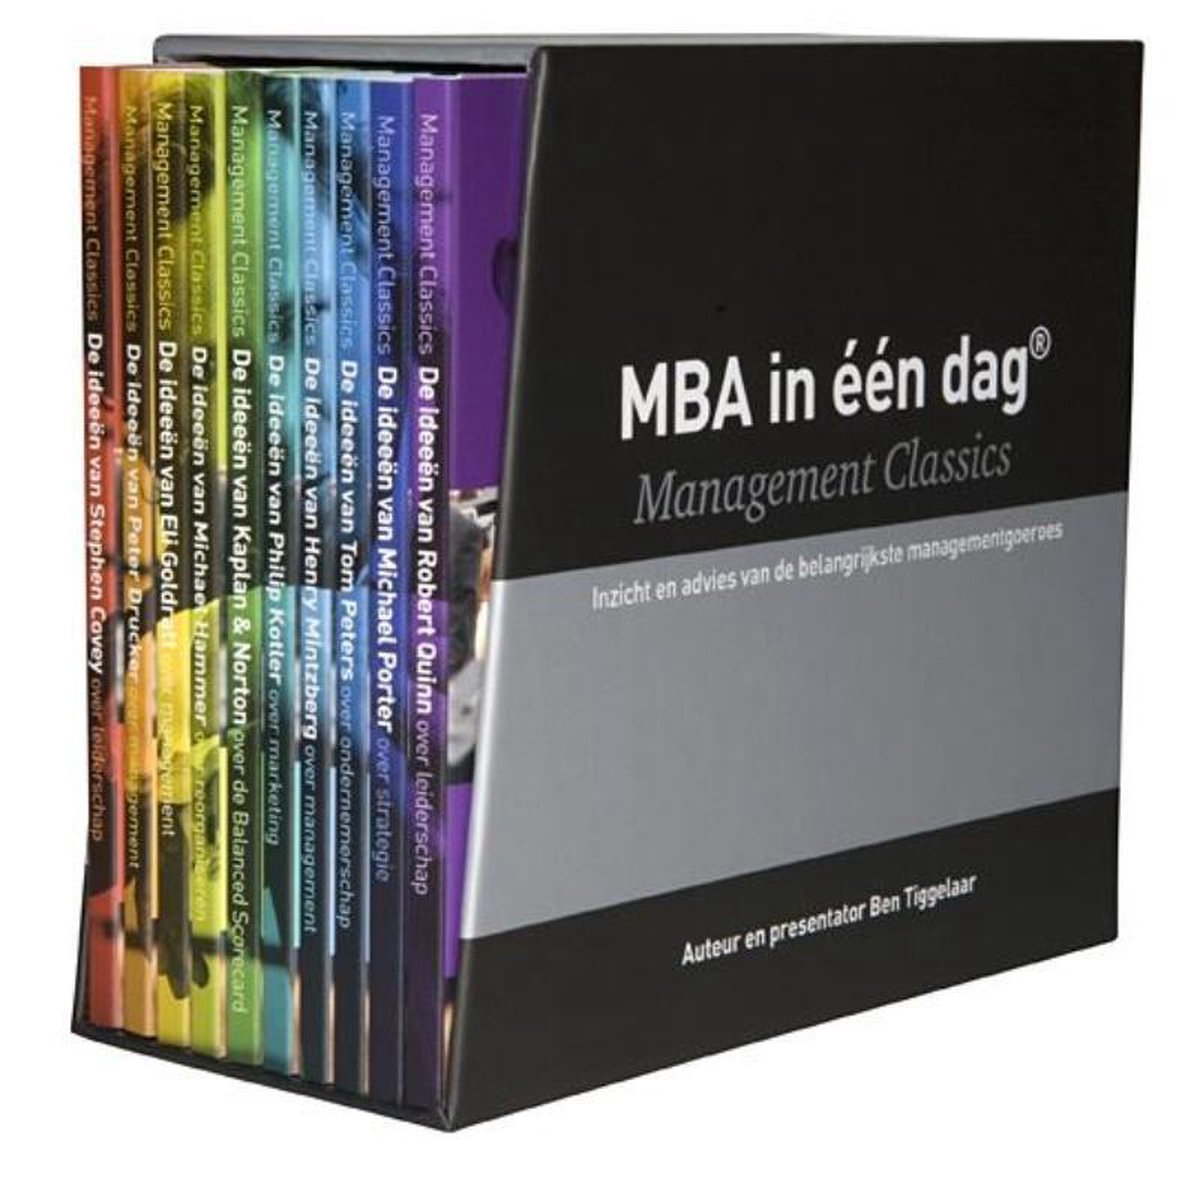 Management classics - MBA in één dag - Management Classics